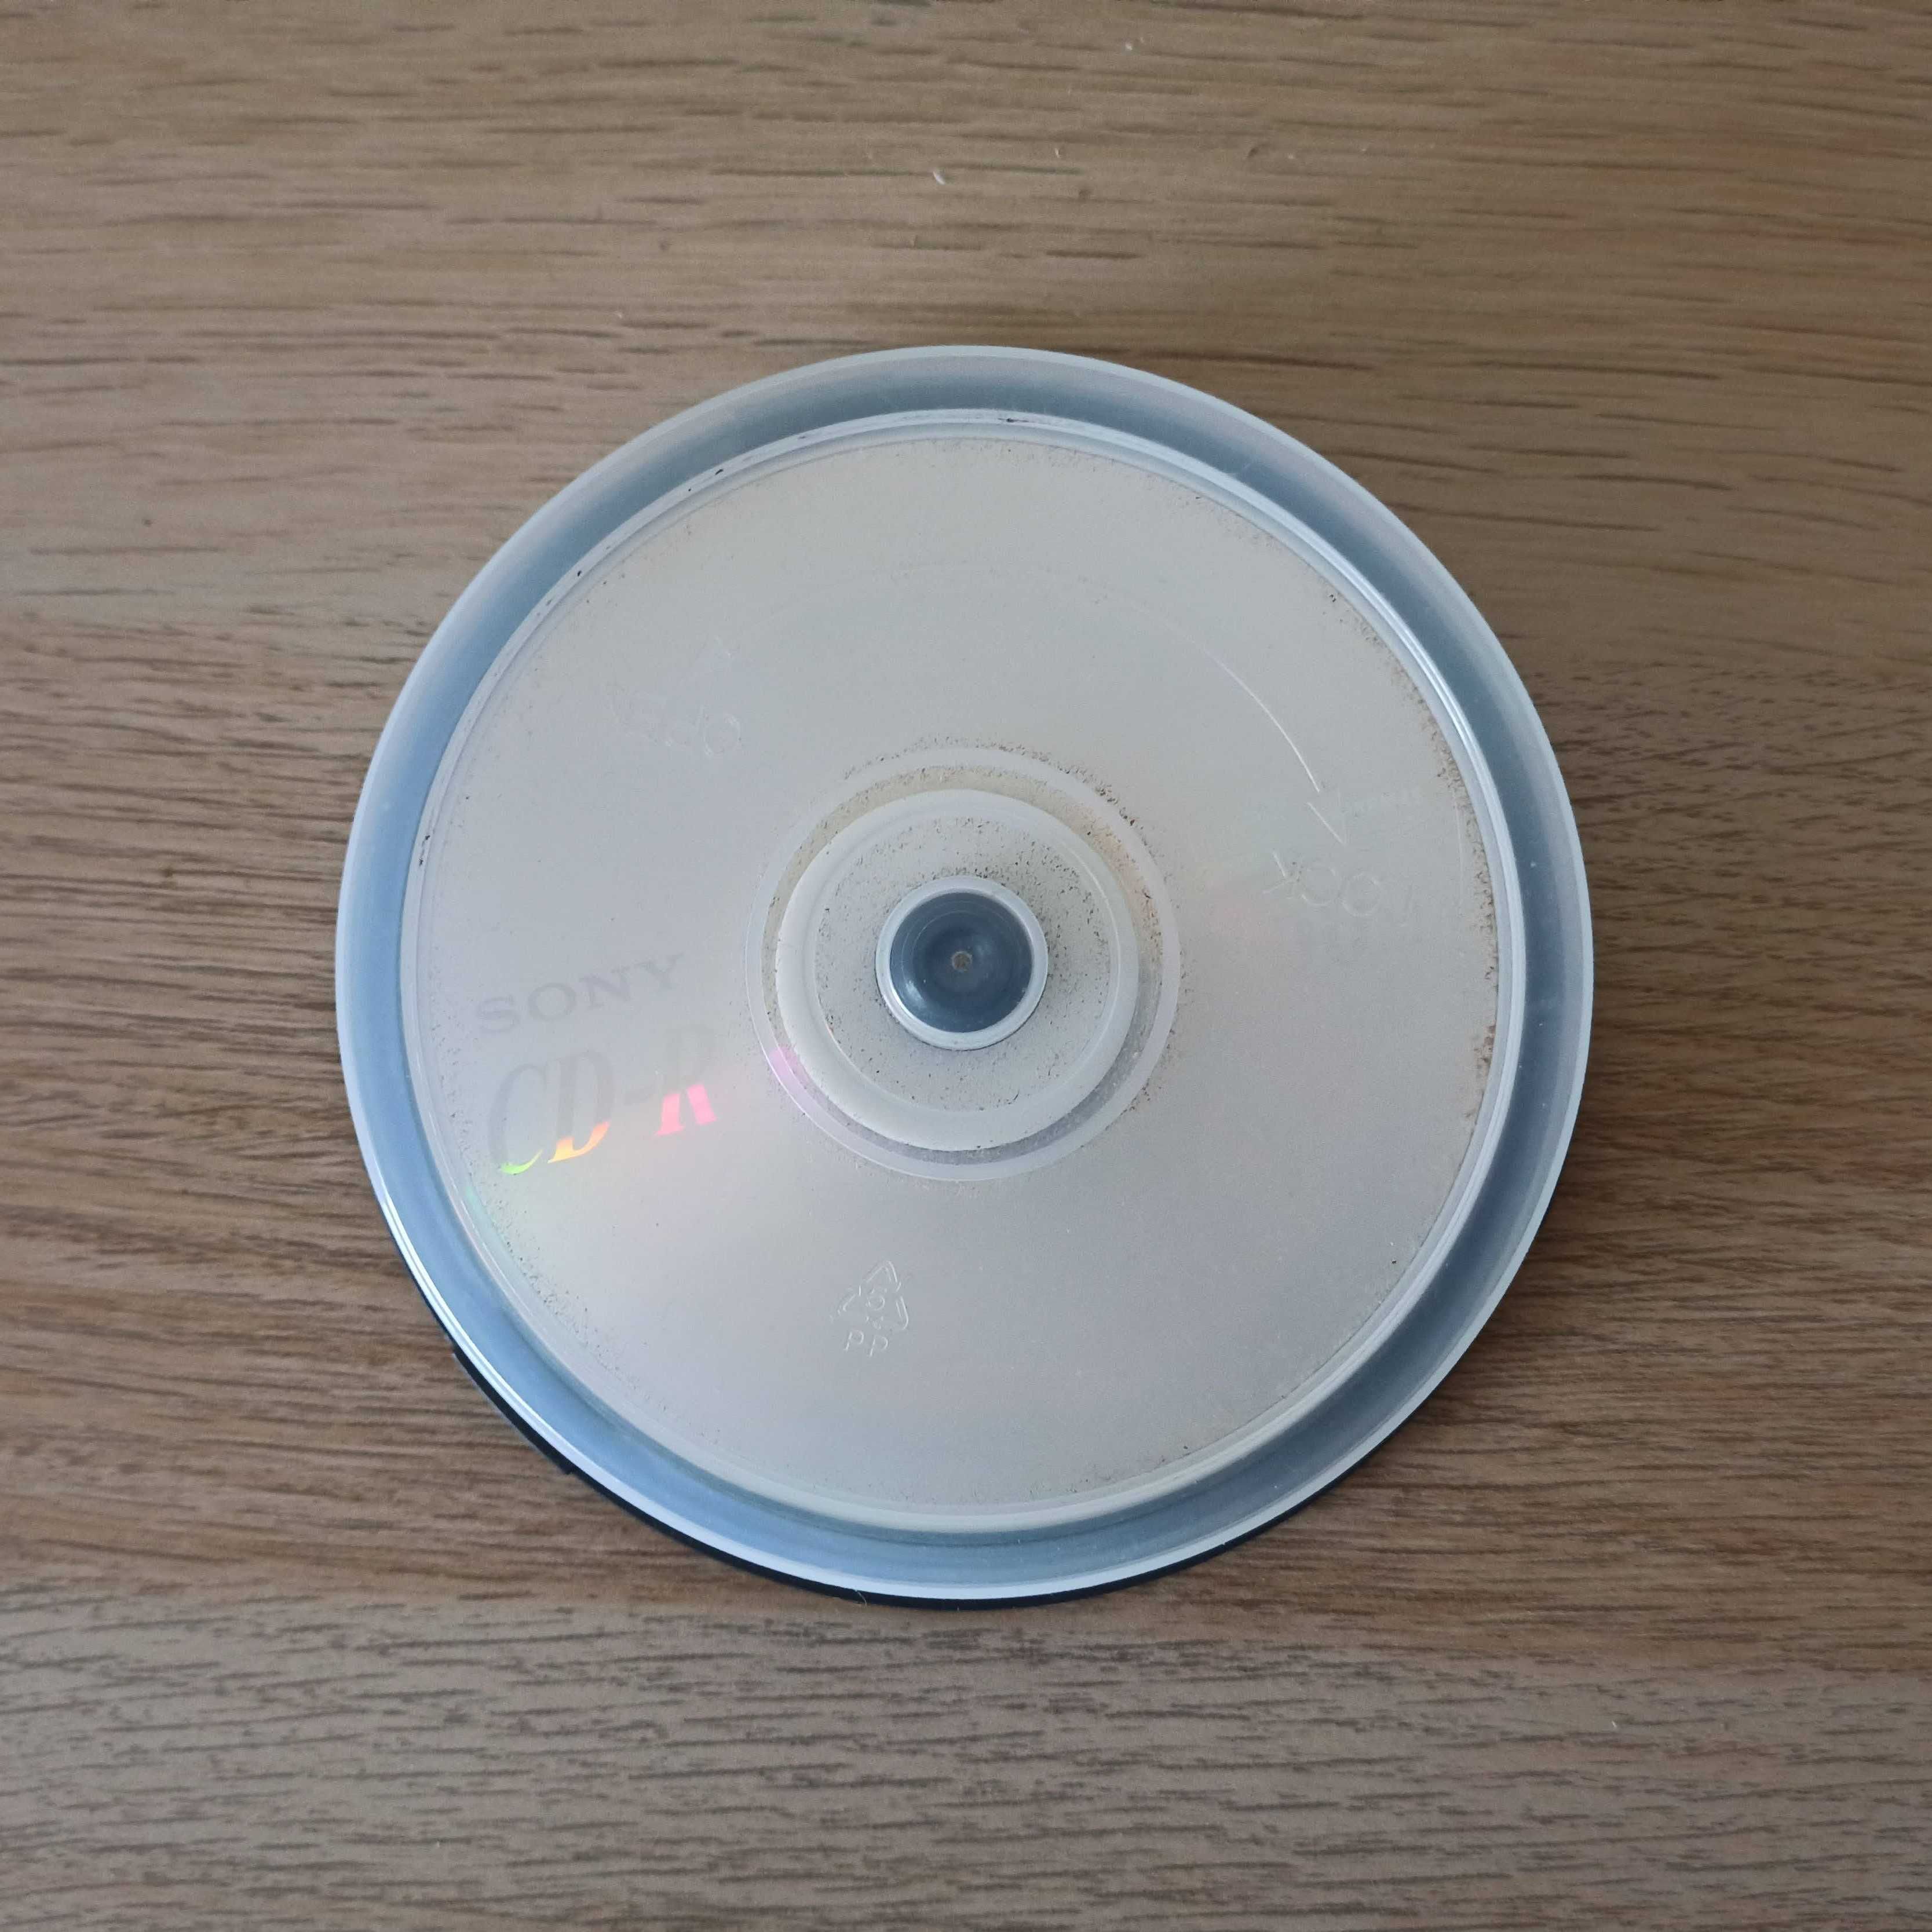 6 CDs-R Sony para gravar 700Mb